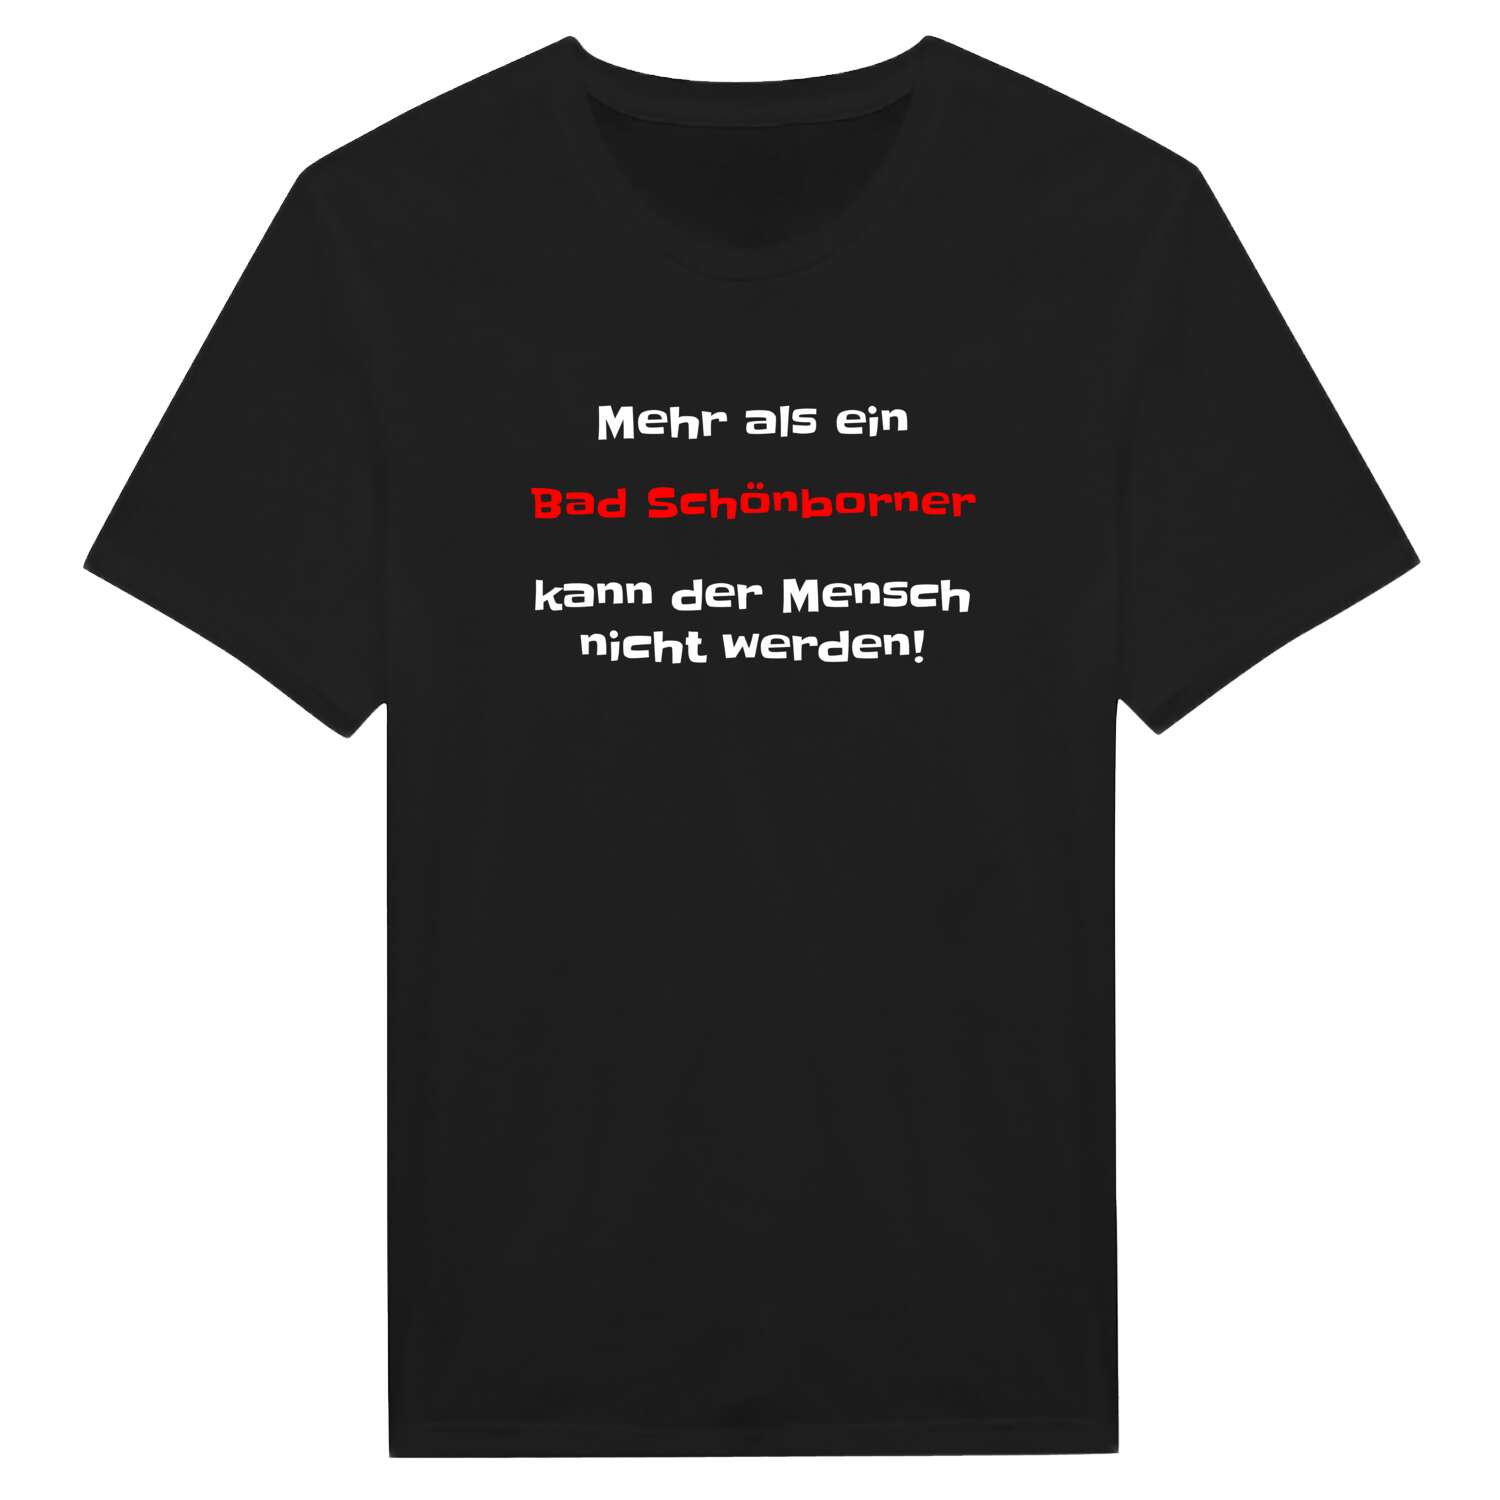 Bad Schönborn T-Shirt »Mehr als ein«